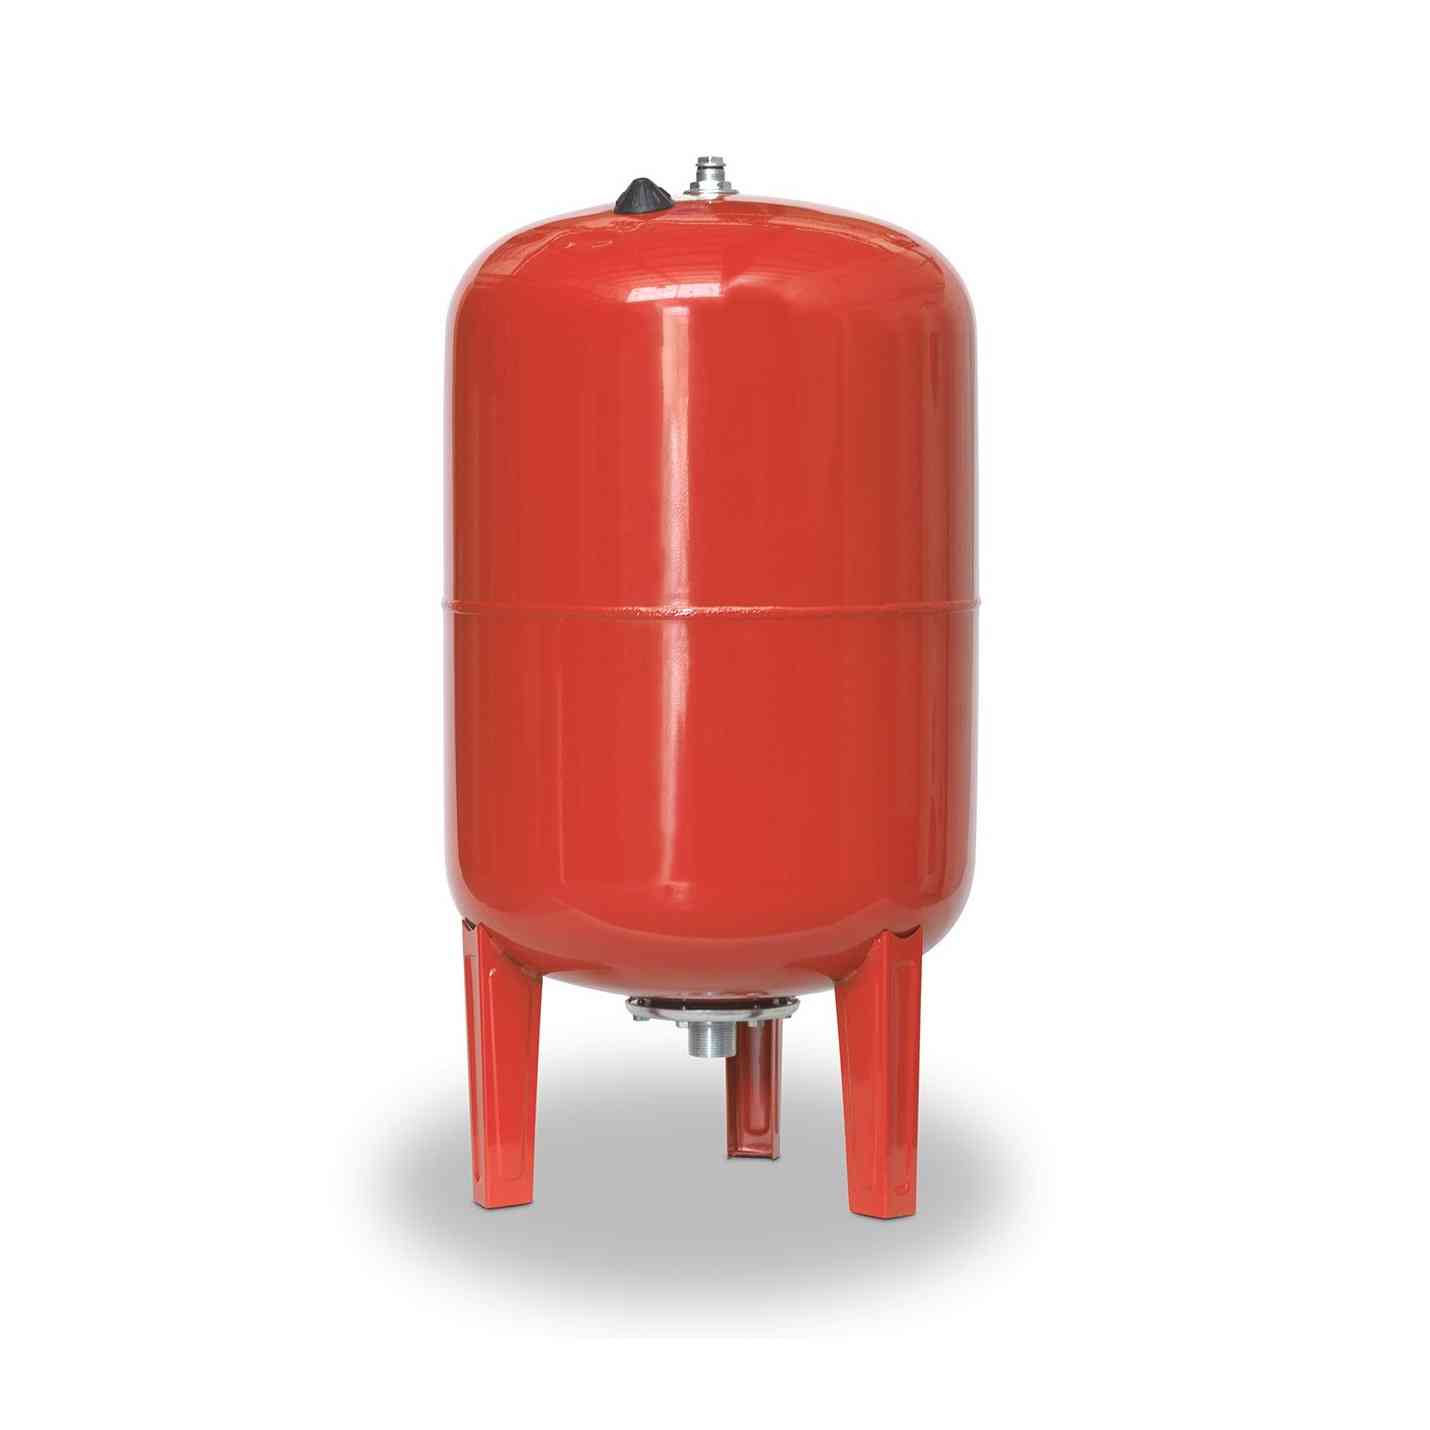 Accumulateur hydropneumatique sur pieds 200 AMR-B90 200 litres diamètre 550mm connexion 1 1/4" avec la référence 03200801 de la marque IBAIONDO